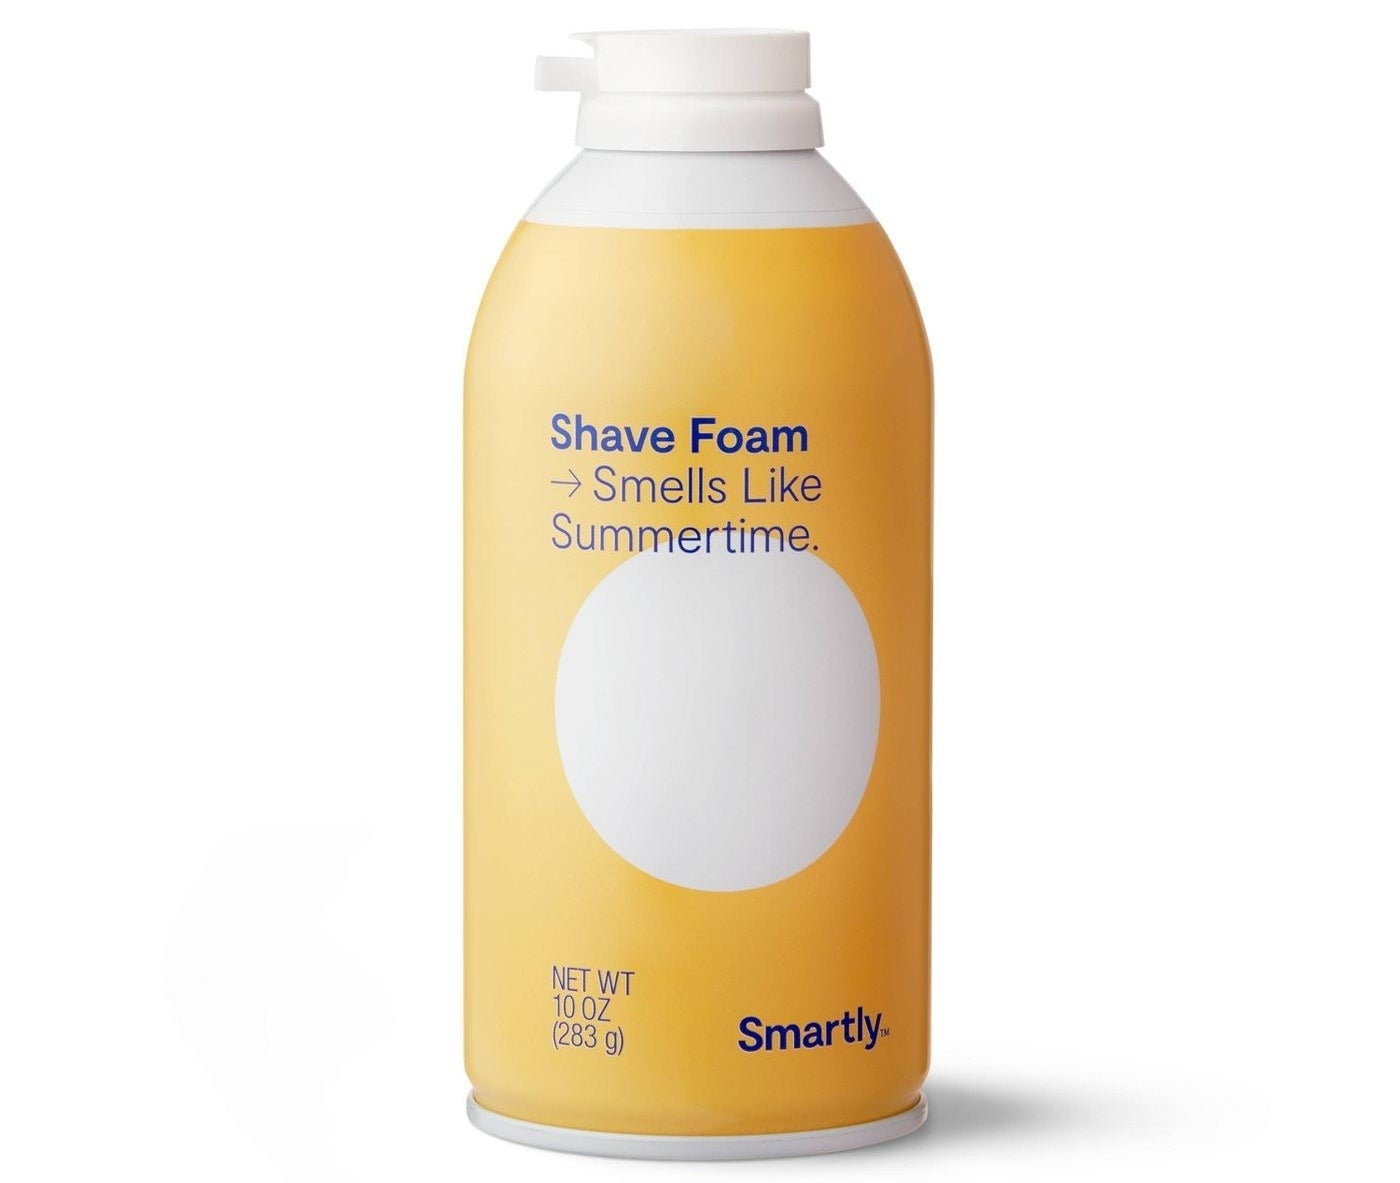 The Summertime Scented Shaving Foam